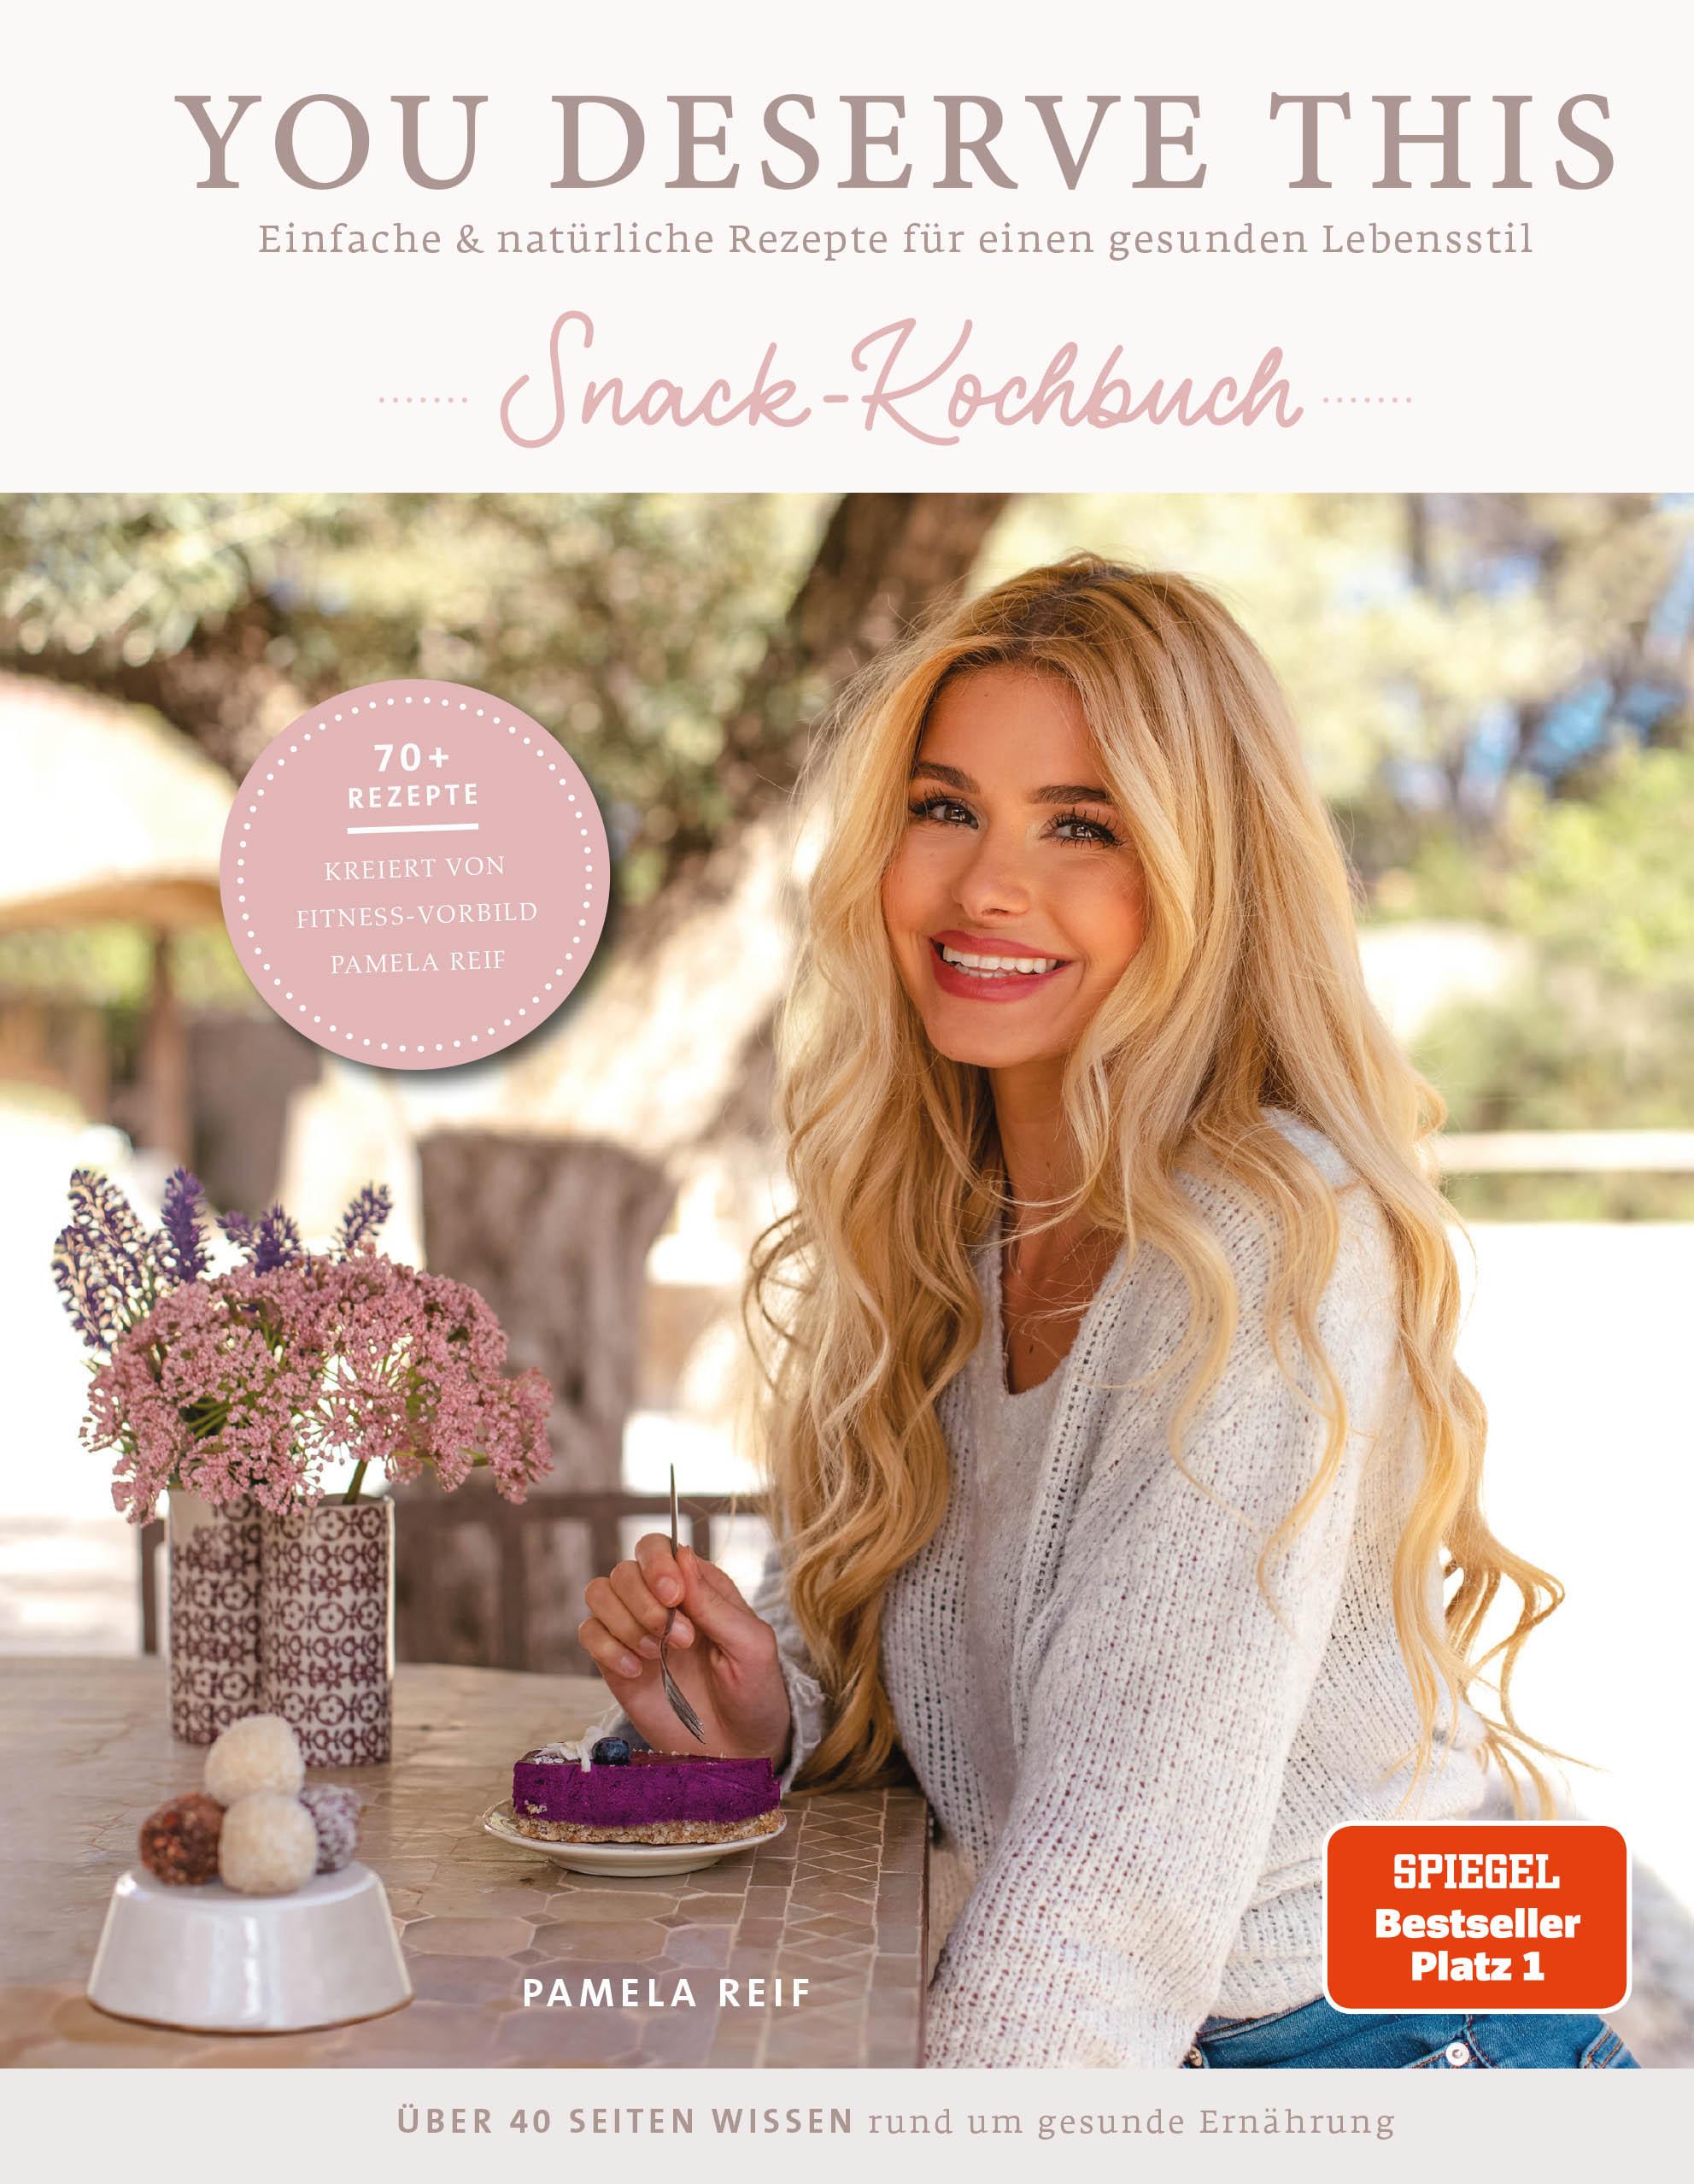 You deserve this. Snack-Kochbuch Einfache & natürliche Rezepte für einen gesunden Lebensstil von Pamela Reif. Einfache & natürliche Rezepte für einen gesunden Lebensstil.